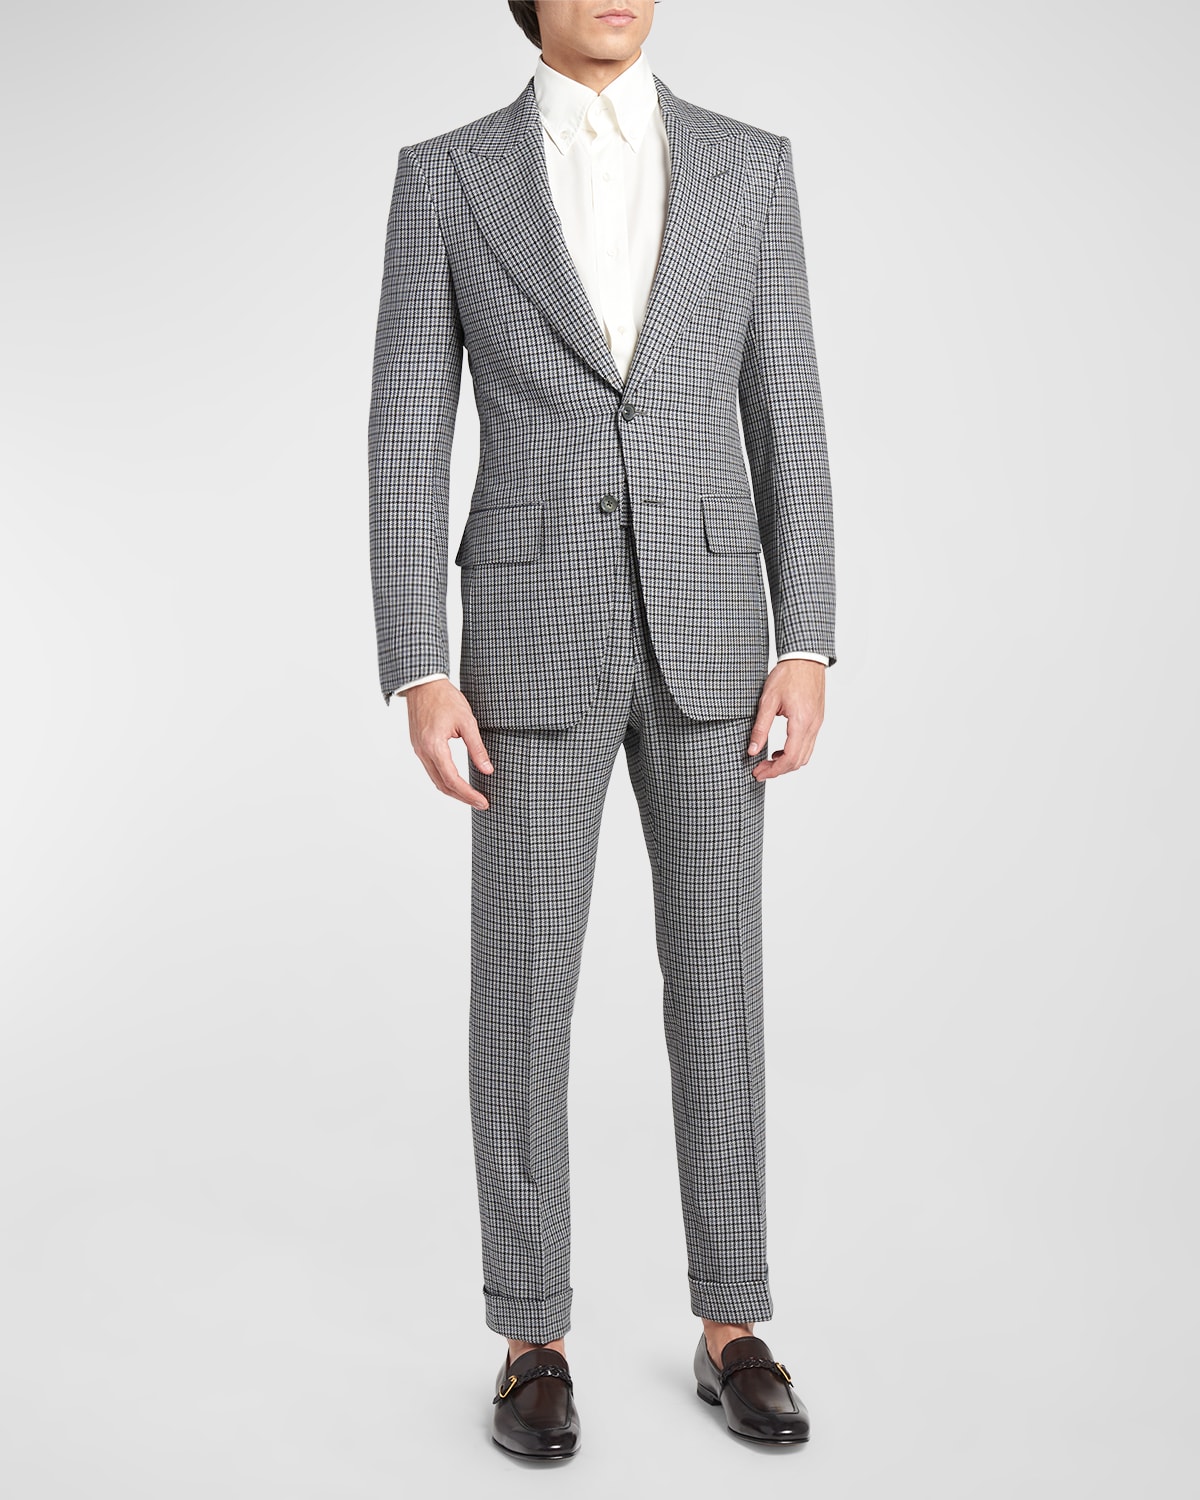 Tom Ford Men's Atticus Tattersall Peak-lapel Suit In Combo Grey